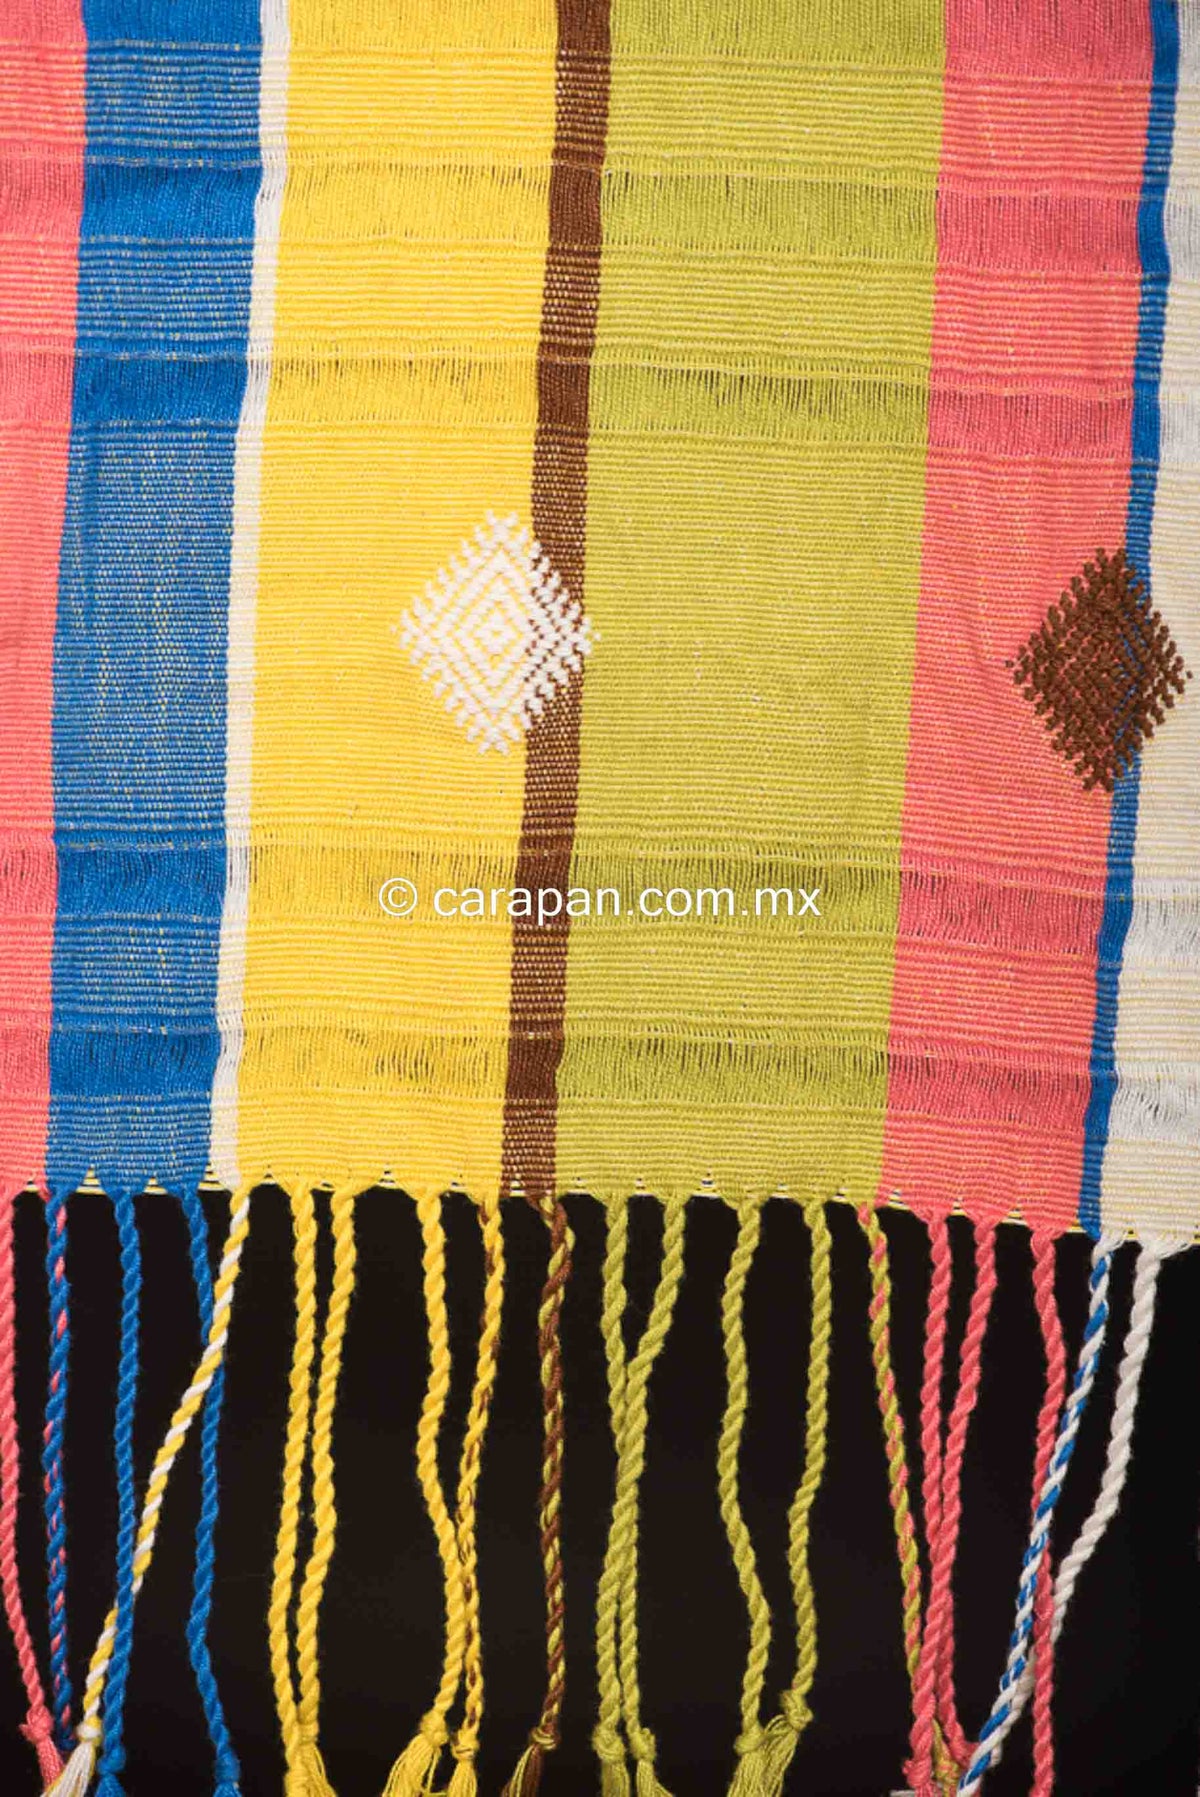 Striped rebozo shawl from Chiapas Mexico